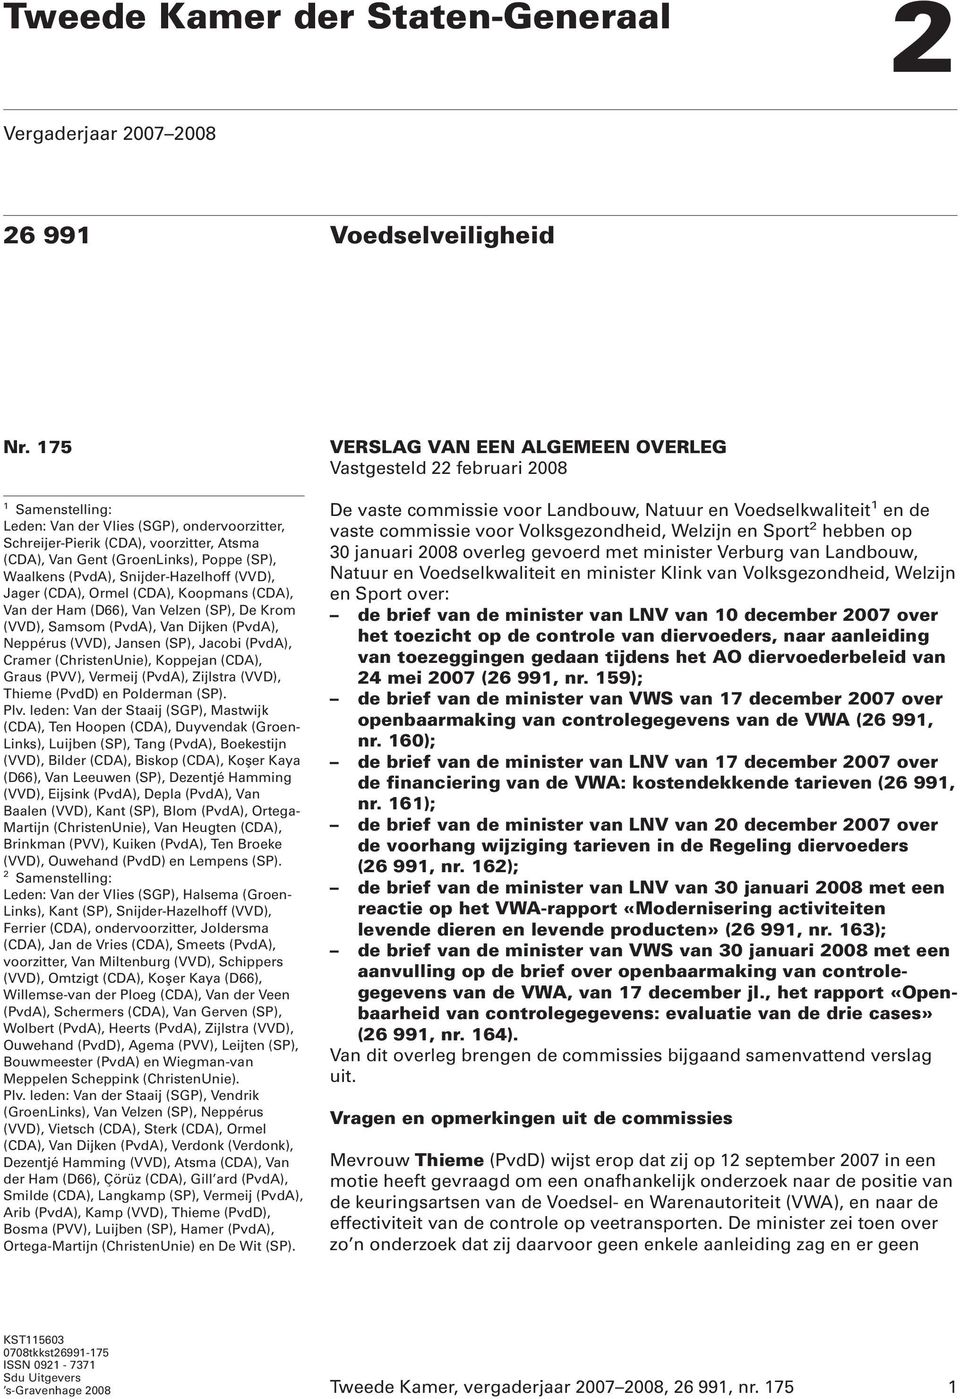 (CDA), Ormel (CDA), Koopmans (CDA), Van der Ham (D66), Van Velzen (SP), De Krom (VVD), Samsom (PvdA), Van Dijken (PvdA), Neppérus (VVD), Jansen (SP), Jacobi (PvdA), Cramer (ChristenUnie), Koppejan